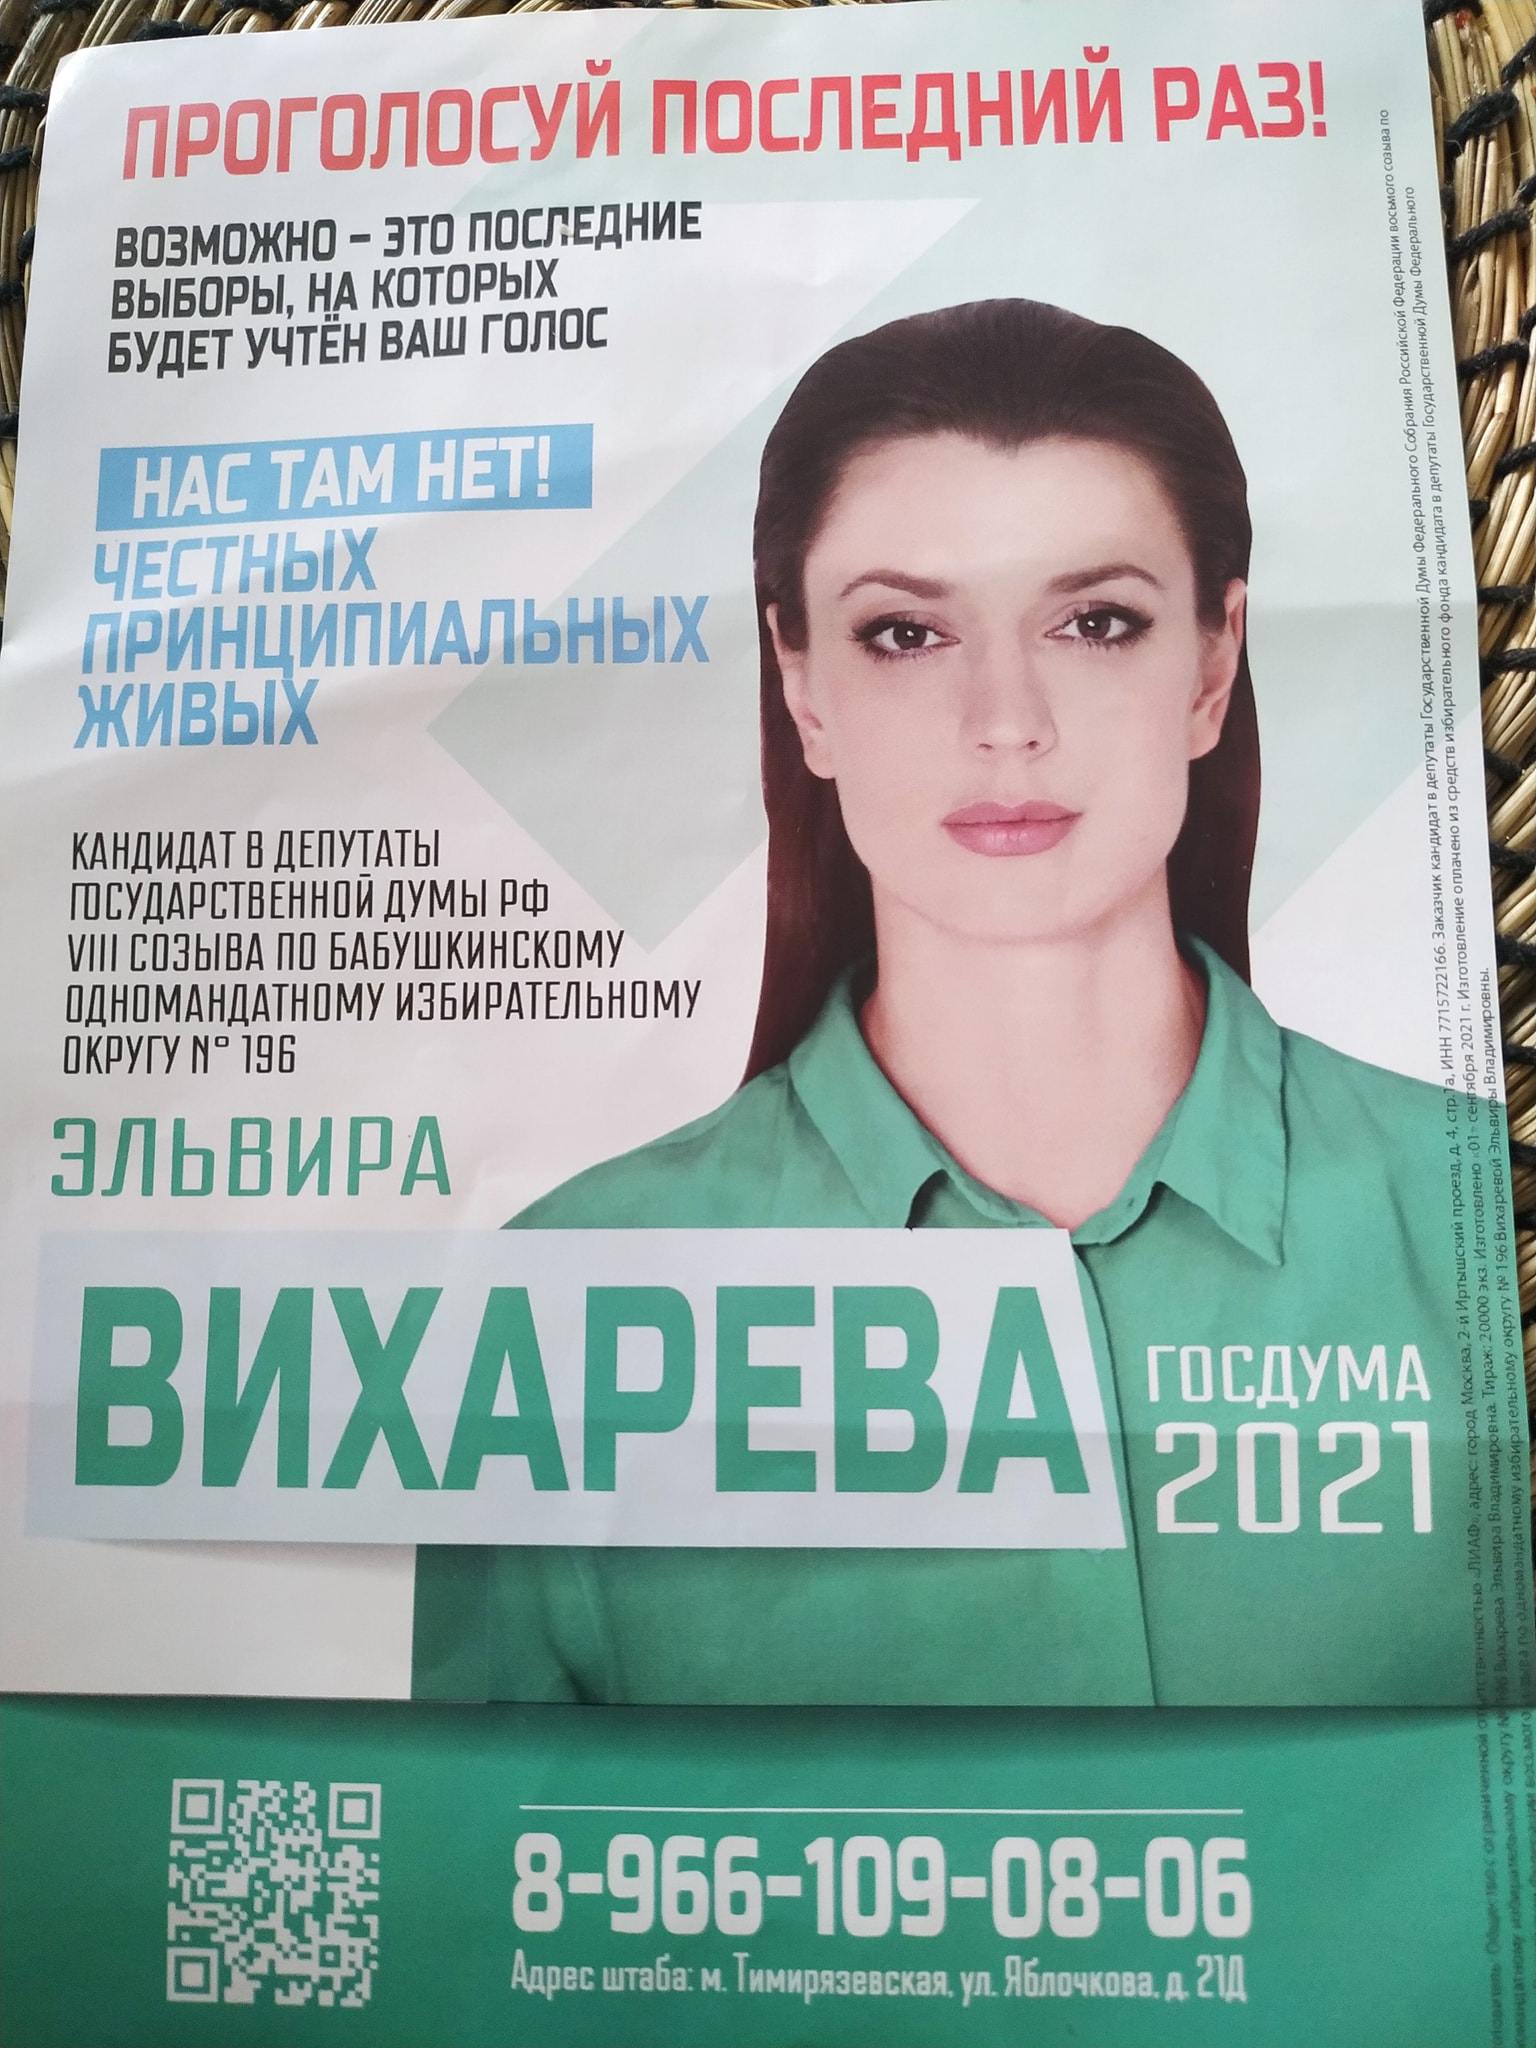 Агитационный плакат политика Эльвиры Вихаревой. Фото личная страница Facebook